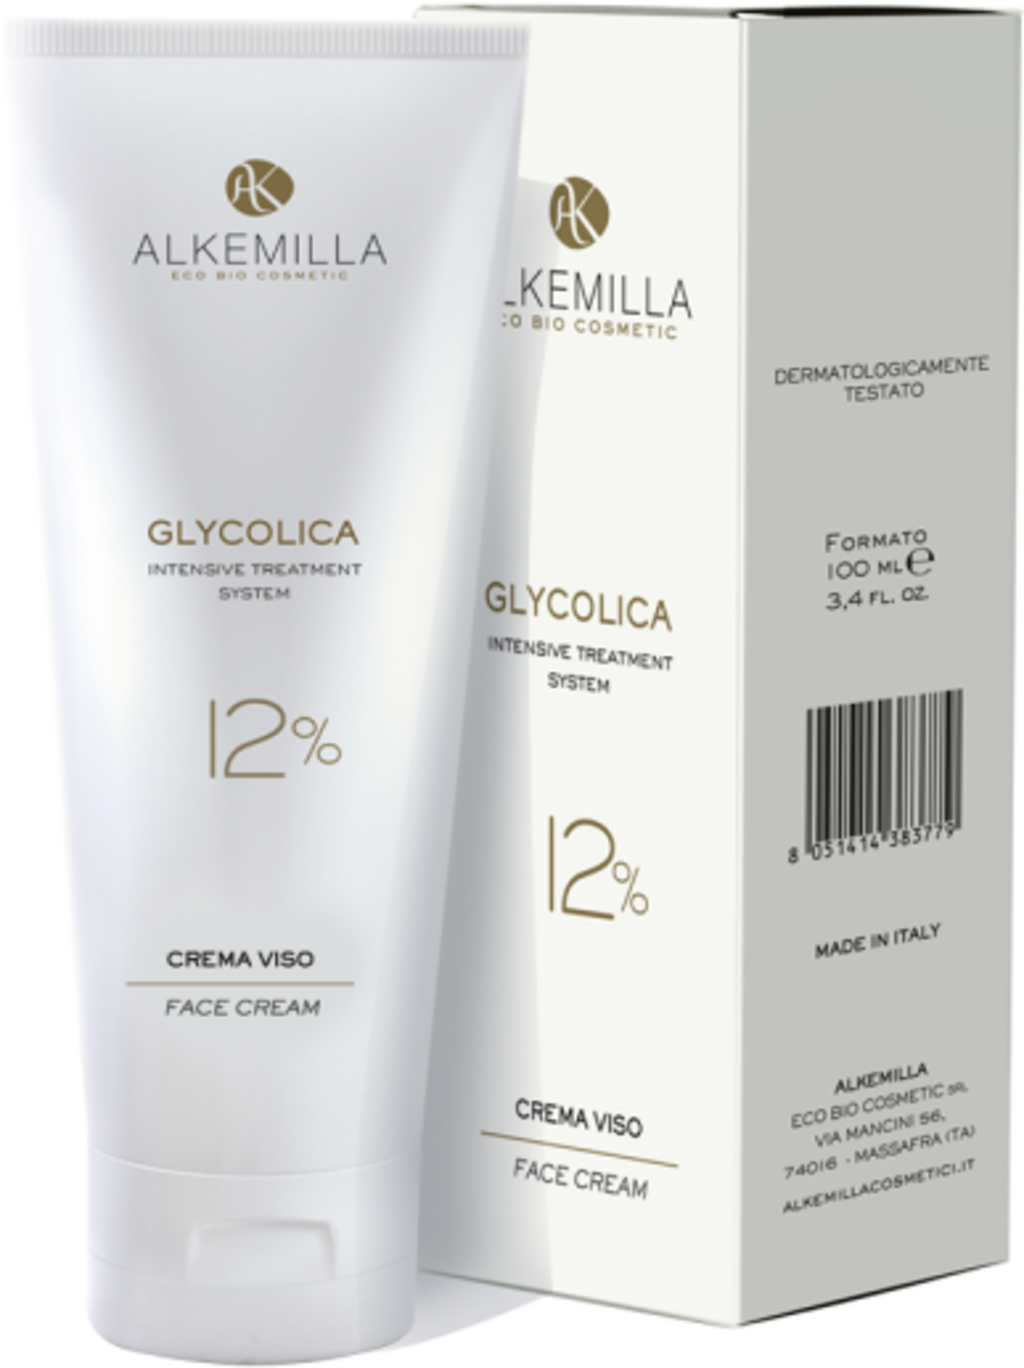 Alkemilla Eco Bio Cosmetic Cuidado Facial 12% Glycolica - 100 ml